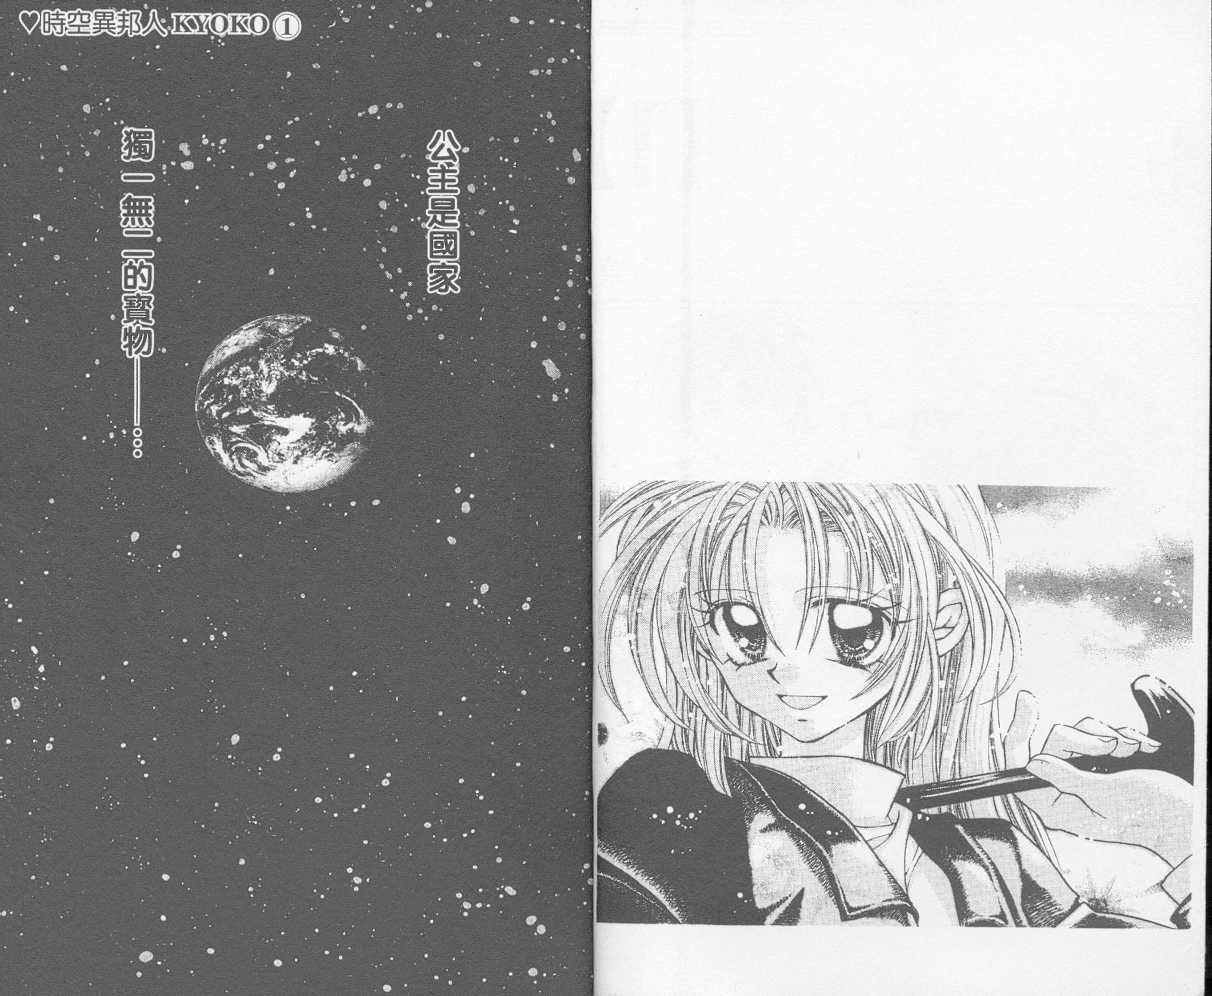 時空異邦人kyoko Vol 01 漫畫線上看 動漫戲說 Acgn Cc